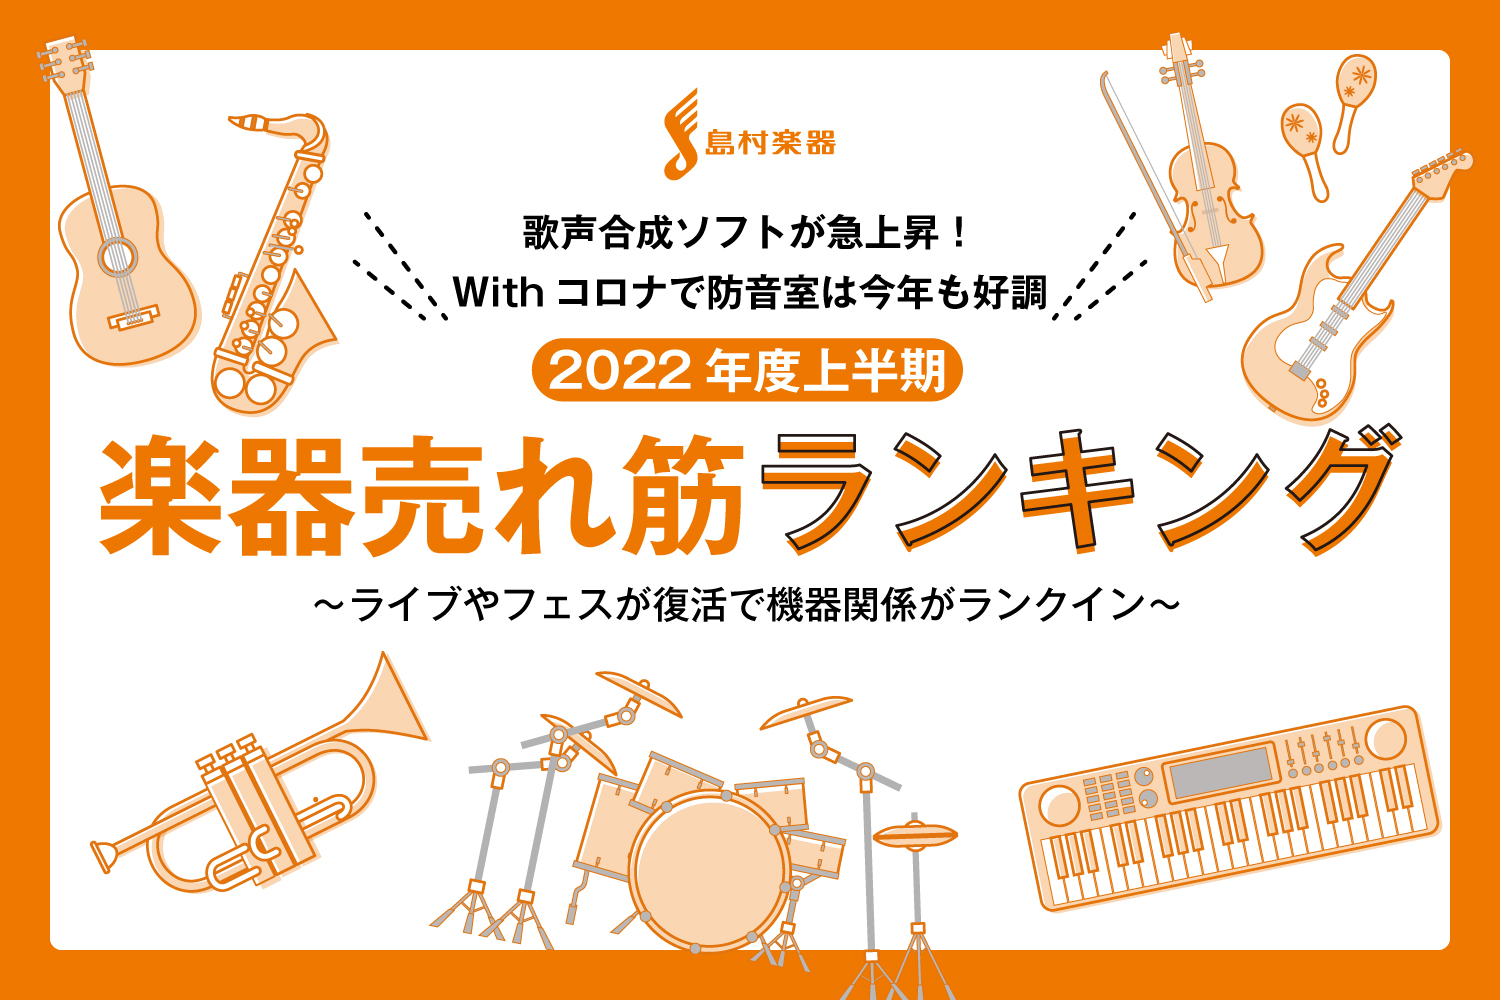 島村楽器株式会社(本社：東京都江戸川区、代表取締役社長：廣瀬 利明、以下 島村楽器)は、島村楽器の店舗で2022年度上半期に売れた楽器ランキングTOP10を発表いたします。2021……